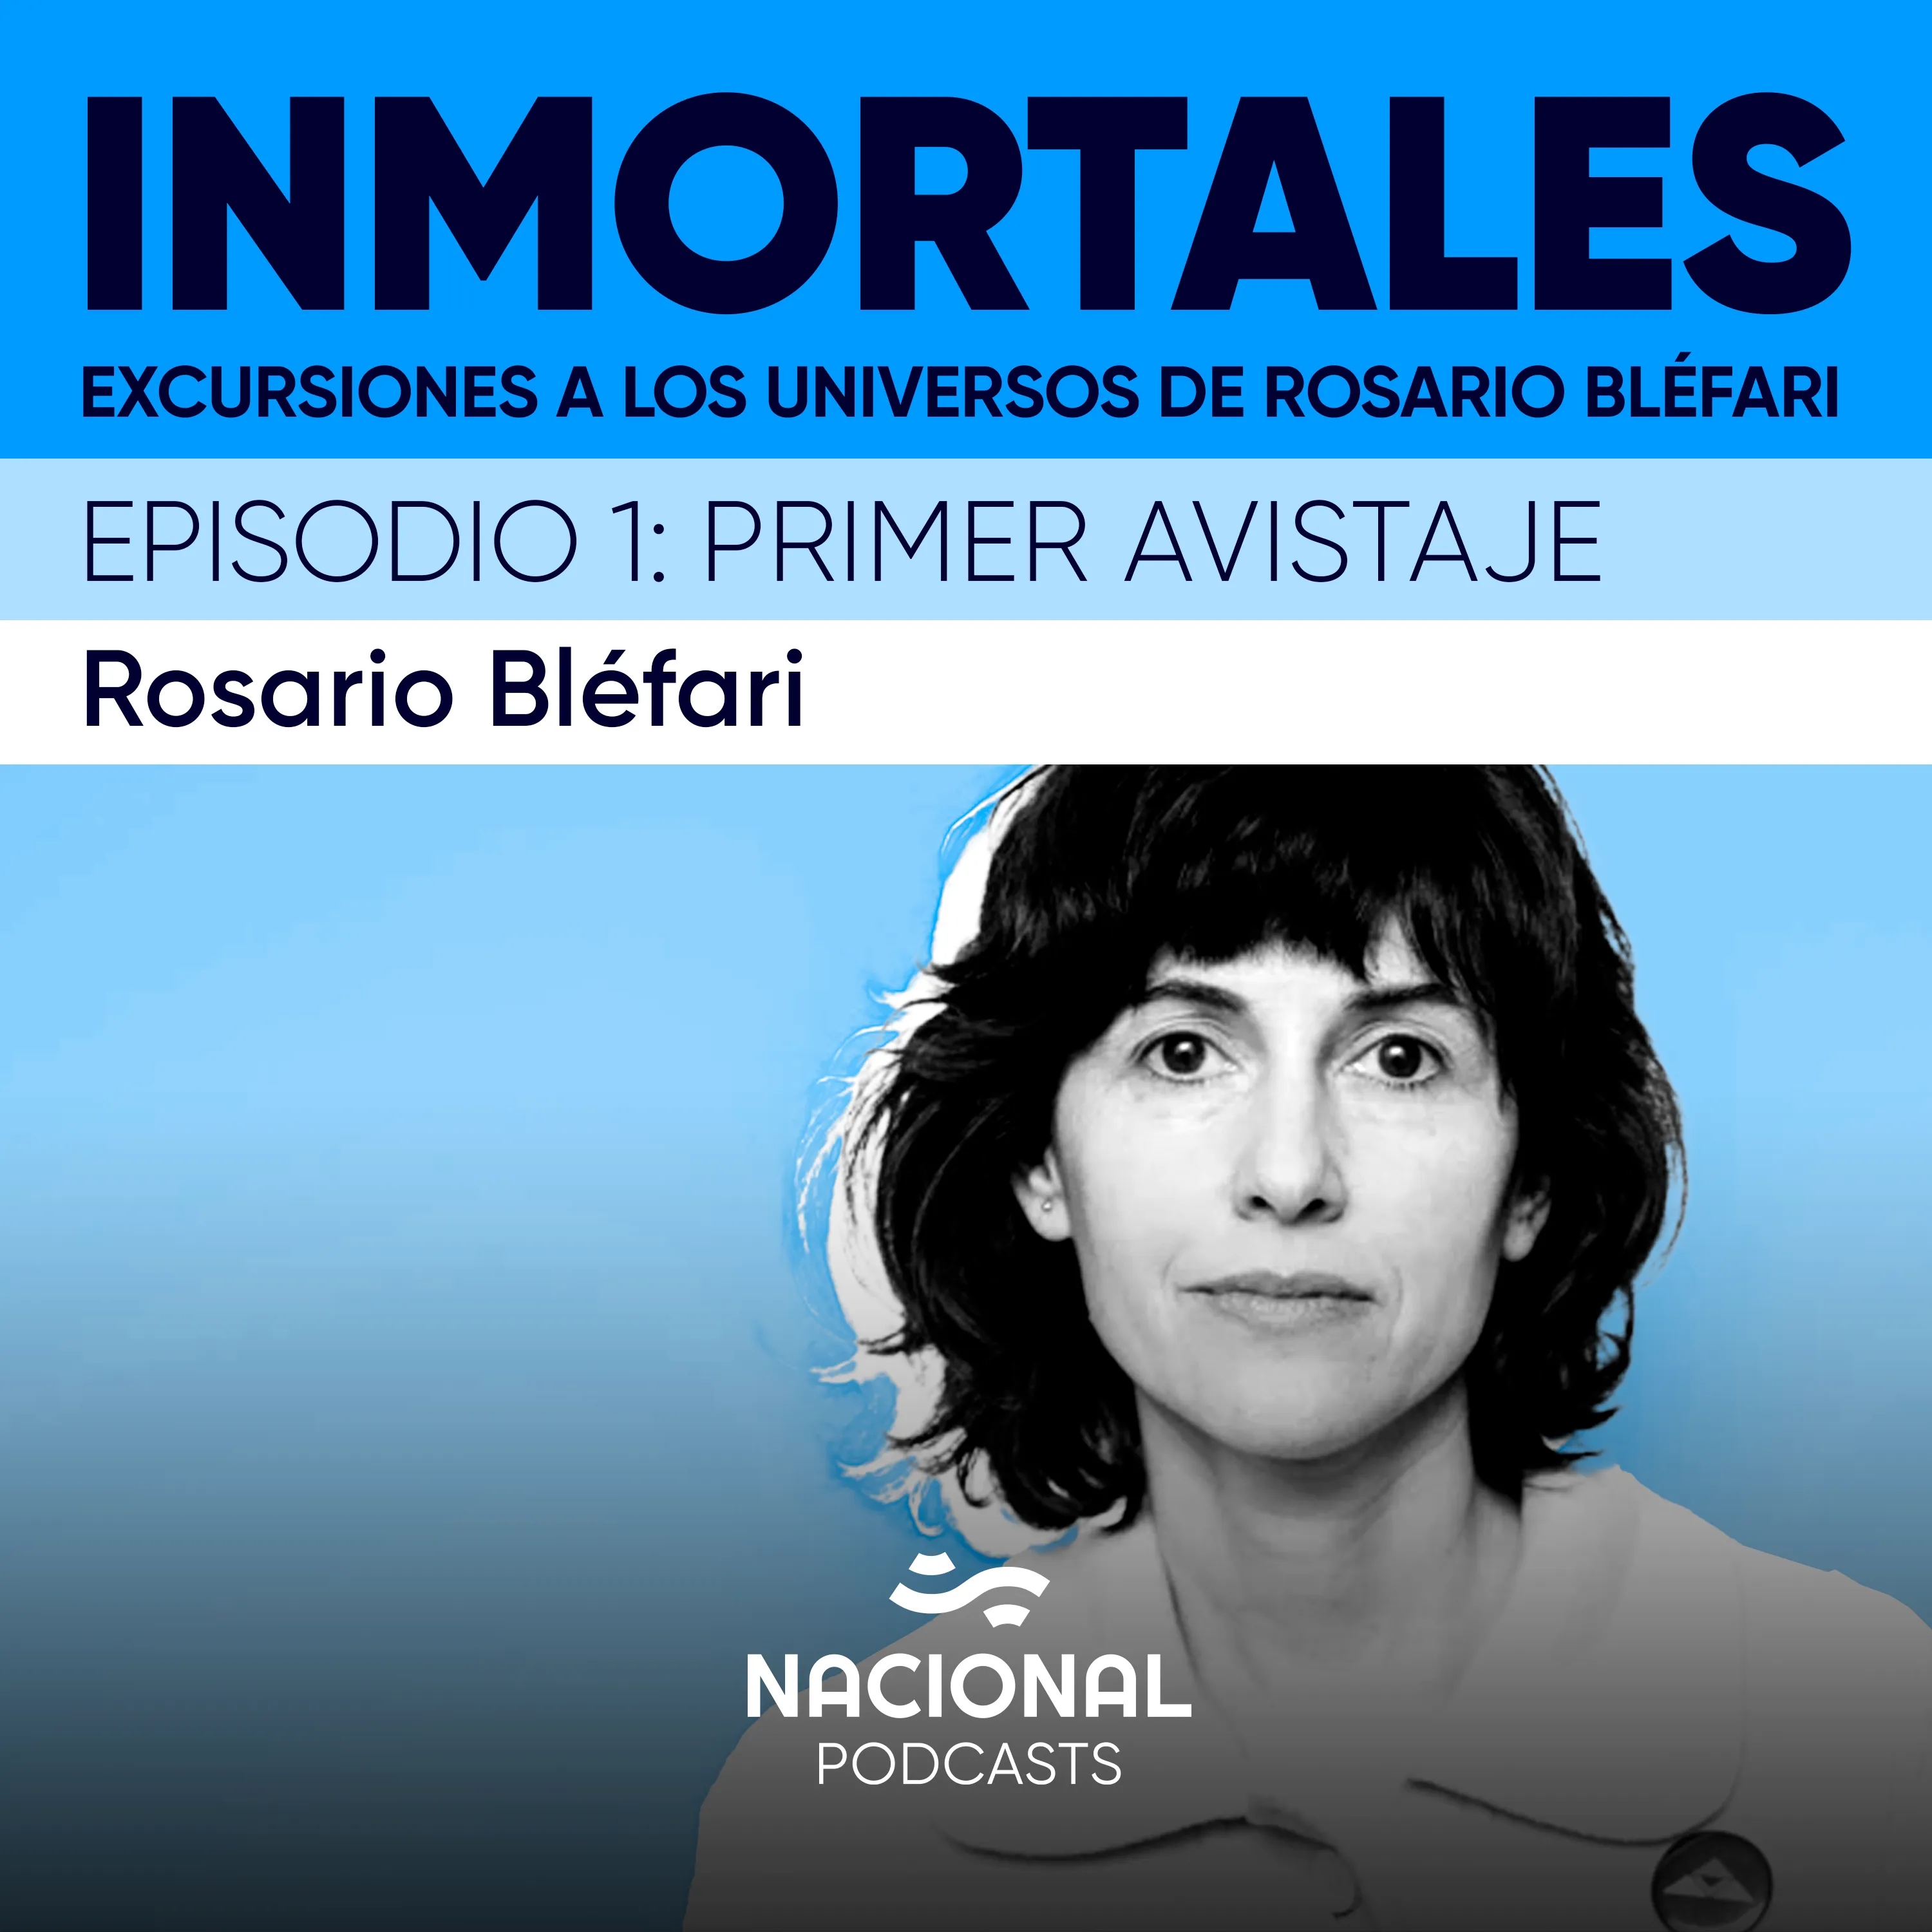 Excursiones a los universos de Rosario Bléfari: Primer avistaje